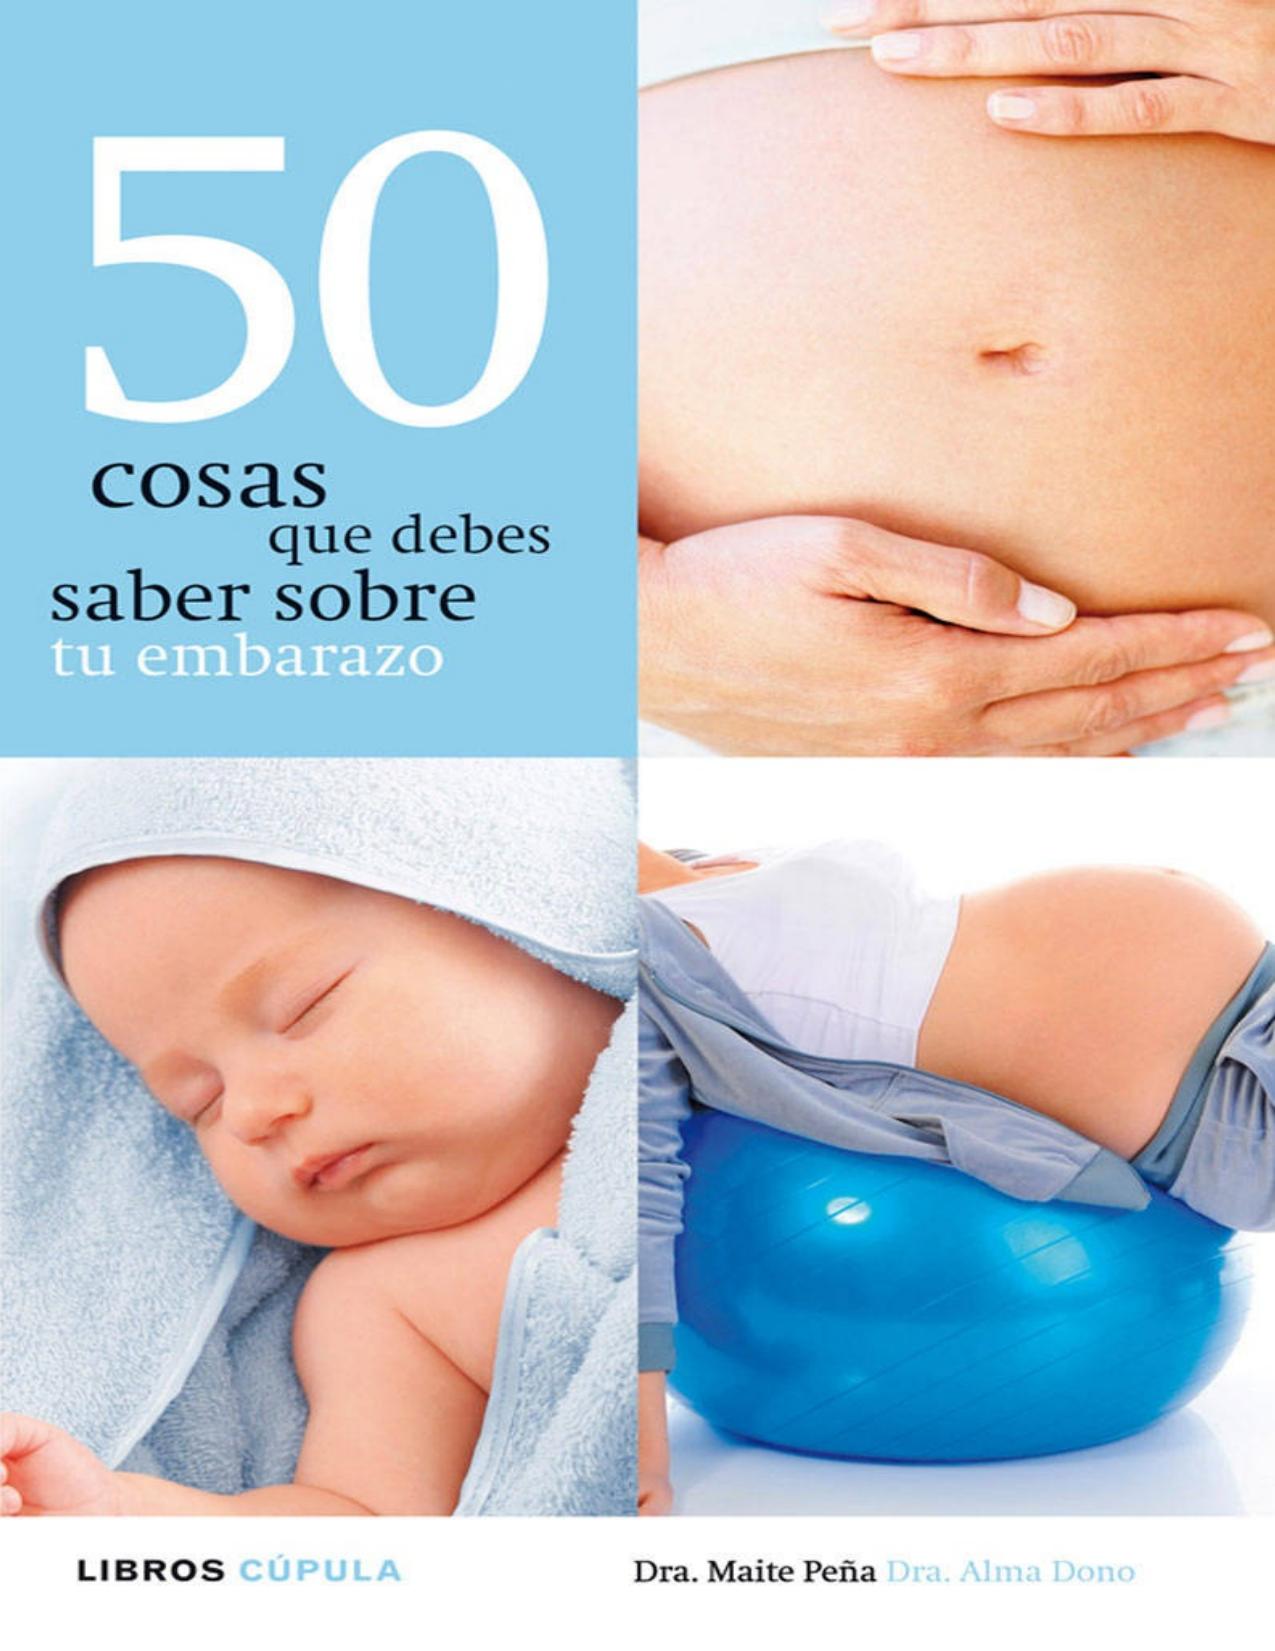 50 cosas que debes saber sobre tu embarazo (Spanish Edition)